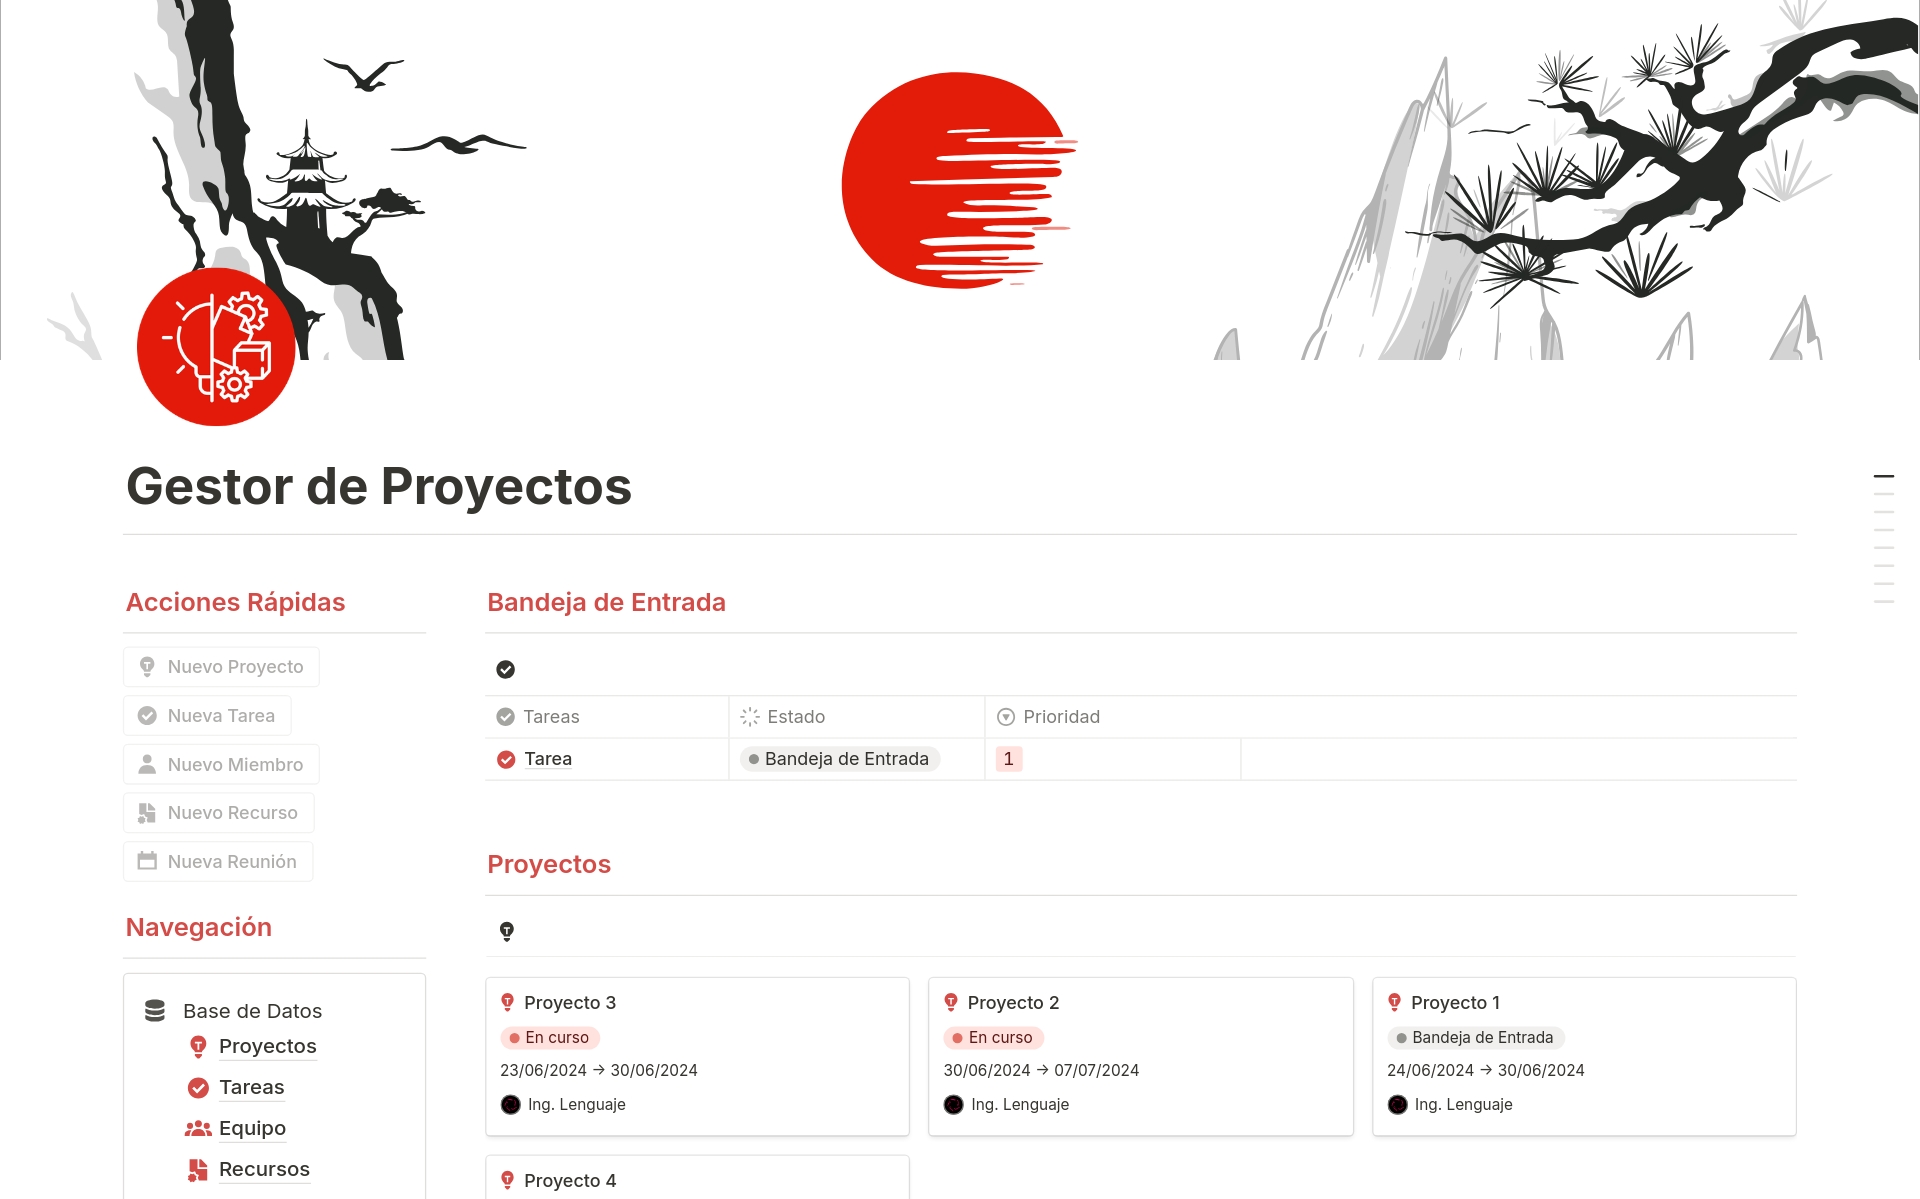 Eine Vorlagenvorschau für Gestor de Proyectos